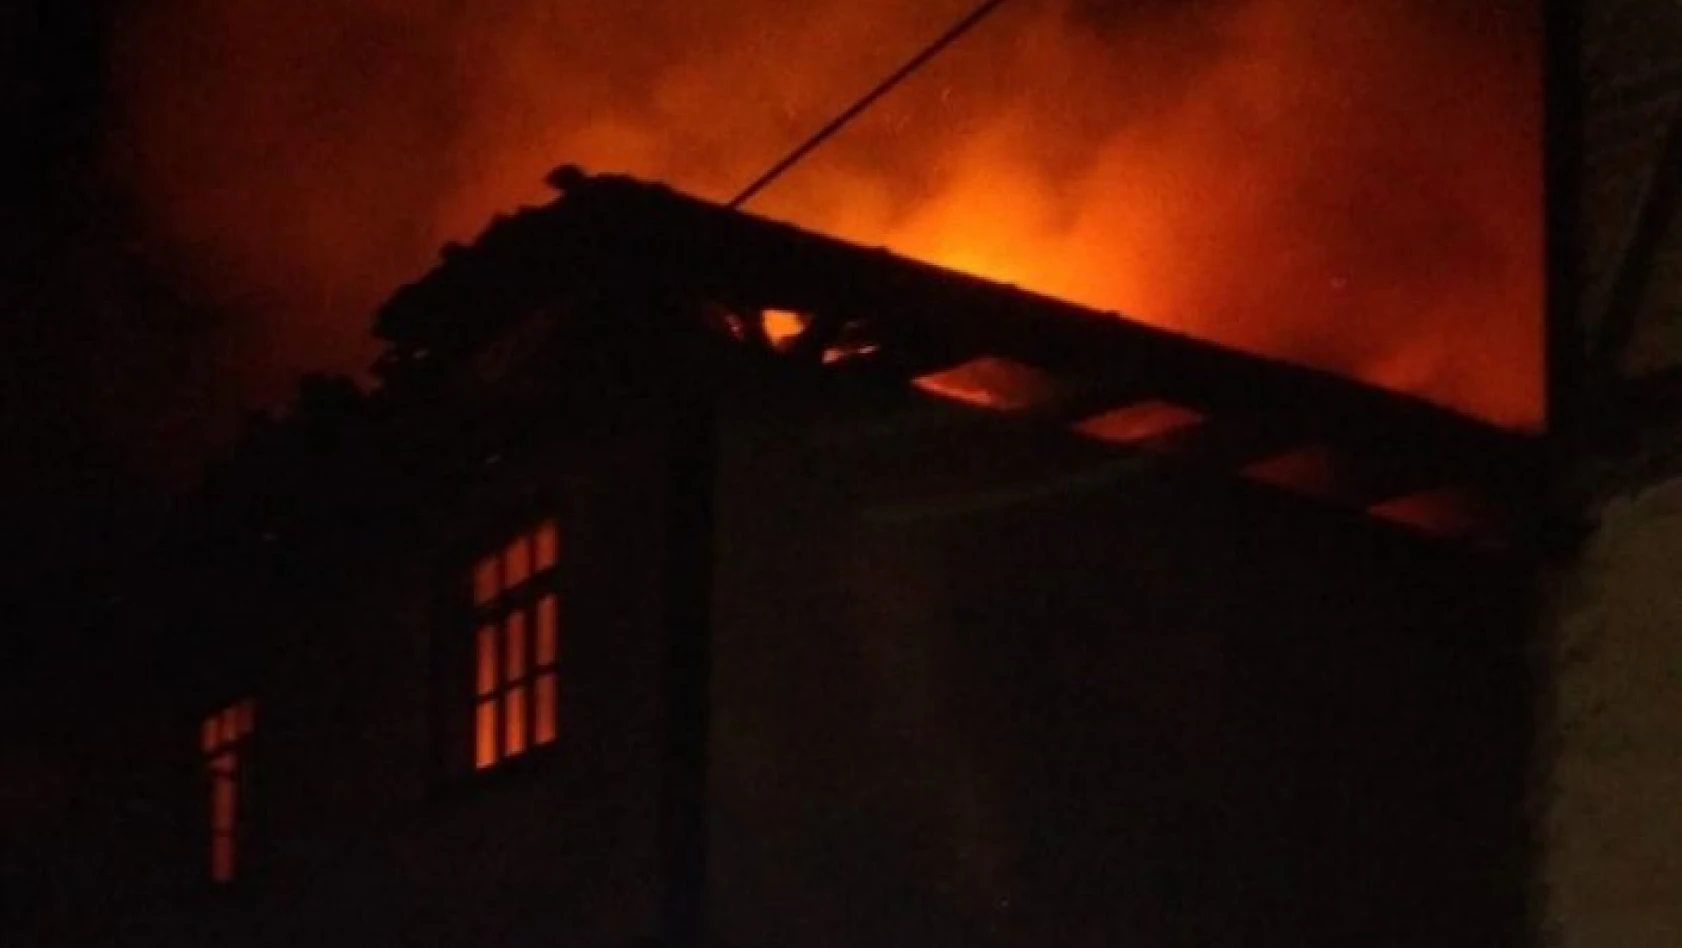 Tosya Karabey köyünde 2 katlı bir ev tamamen yandı